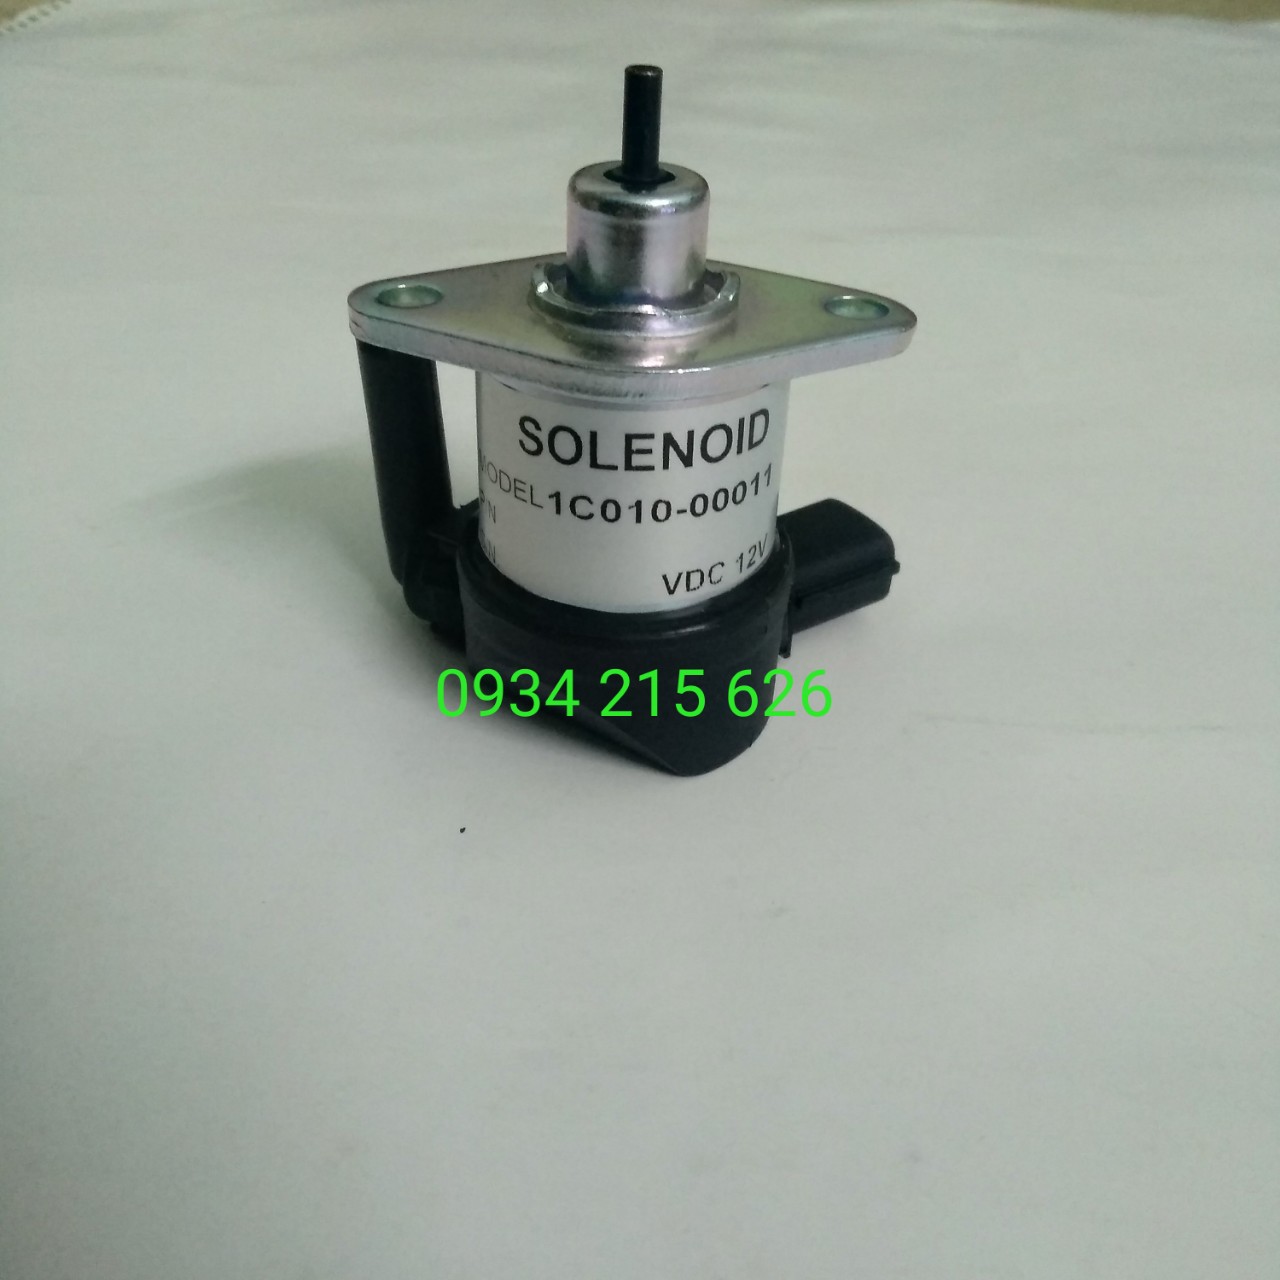 Solenoid - 1C010-00011